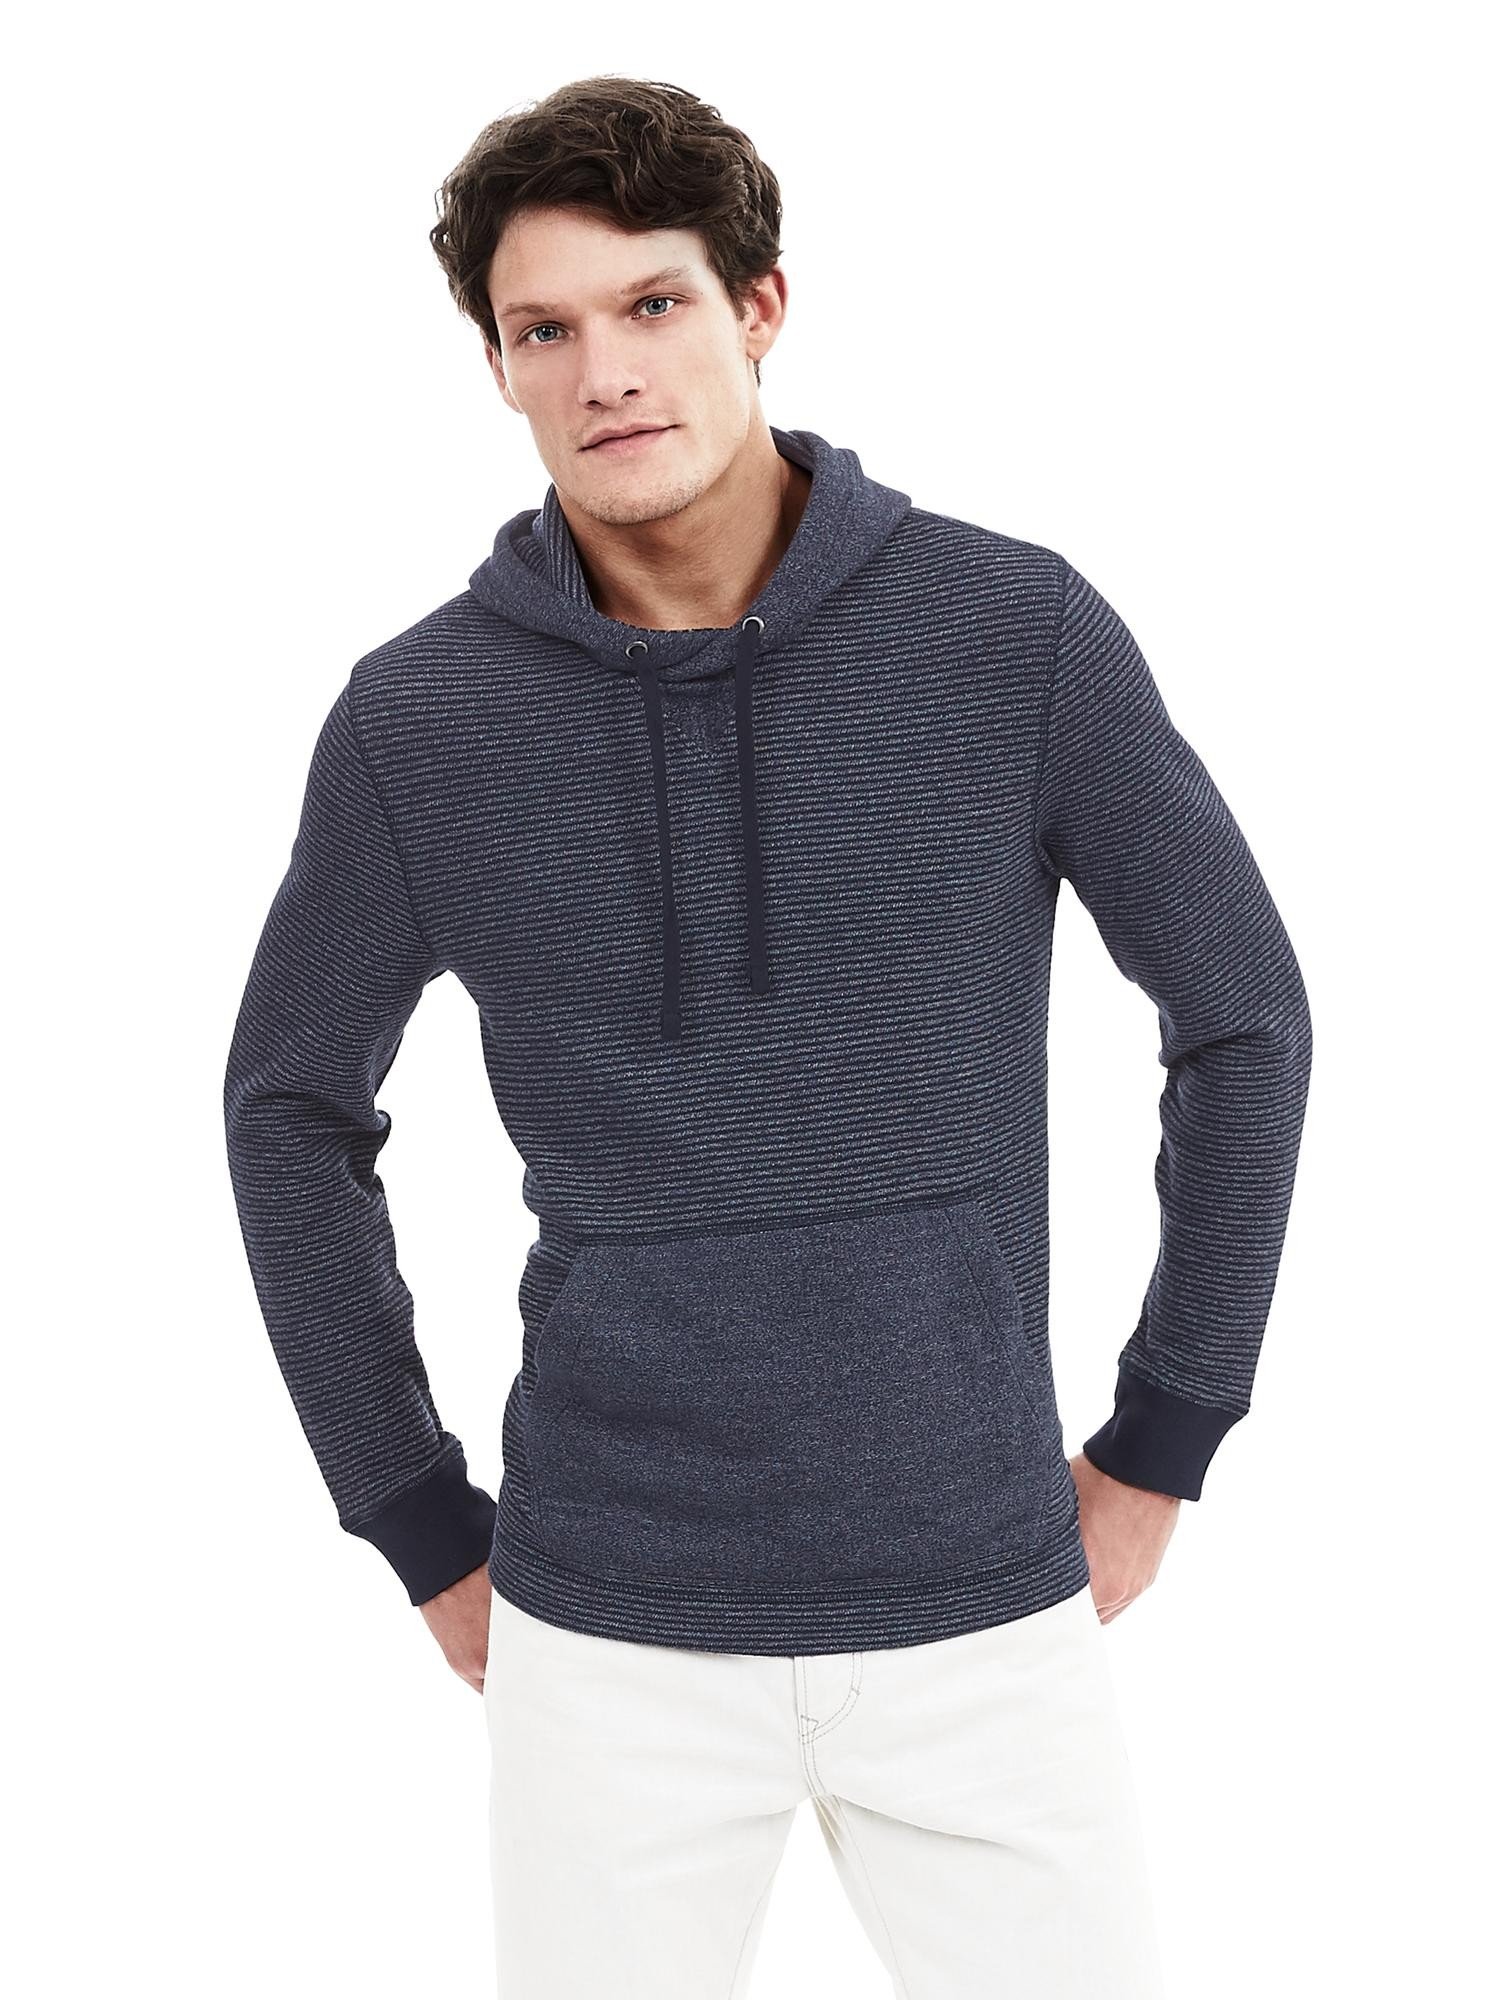 Kapüşonlu sweatshirt product image